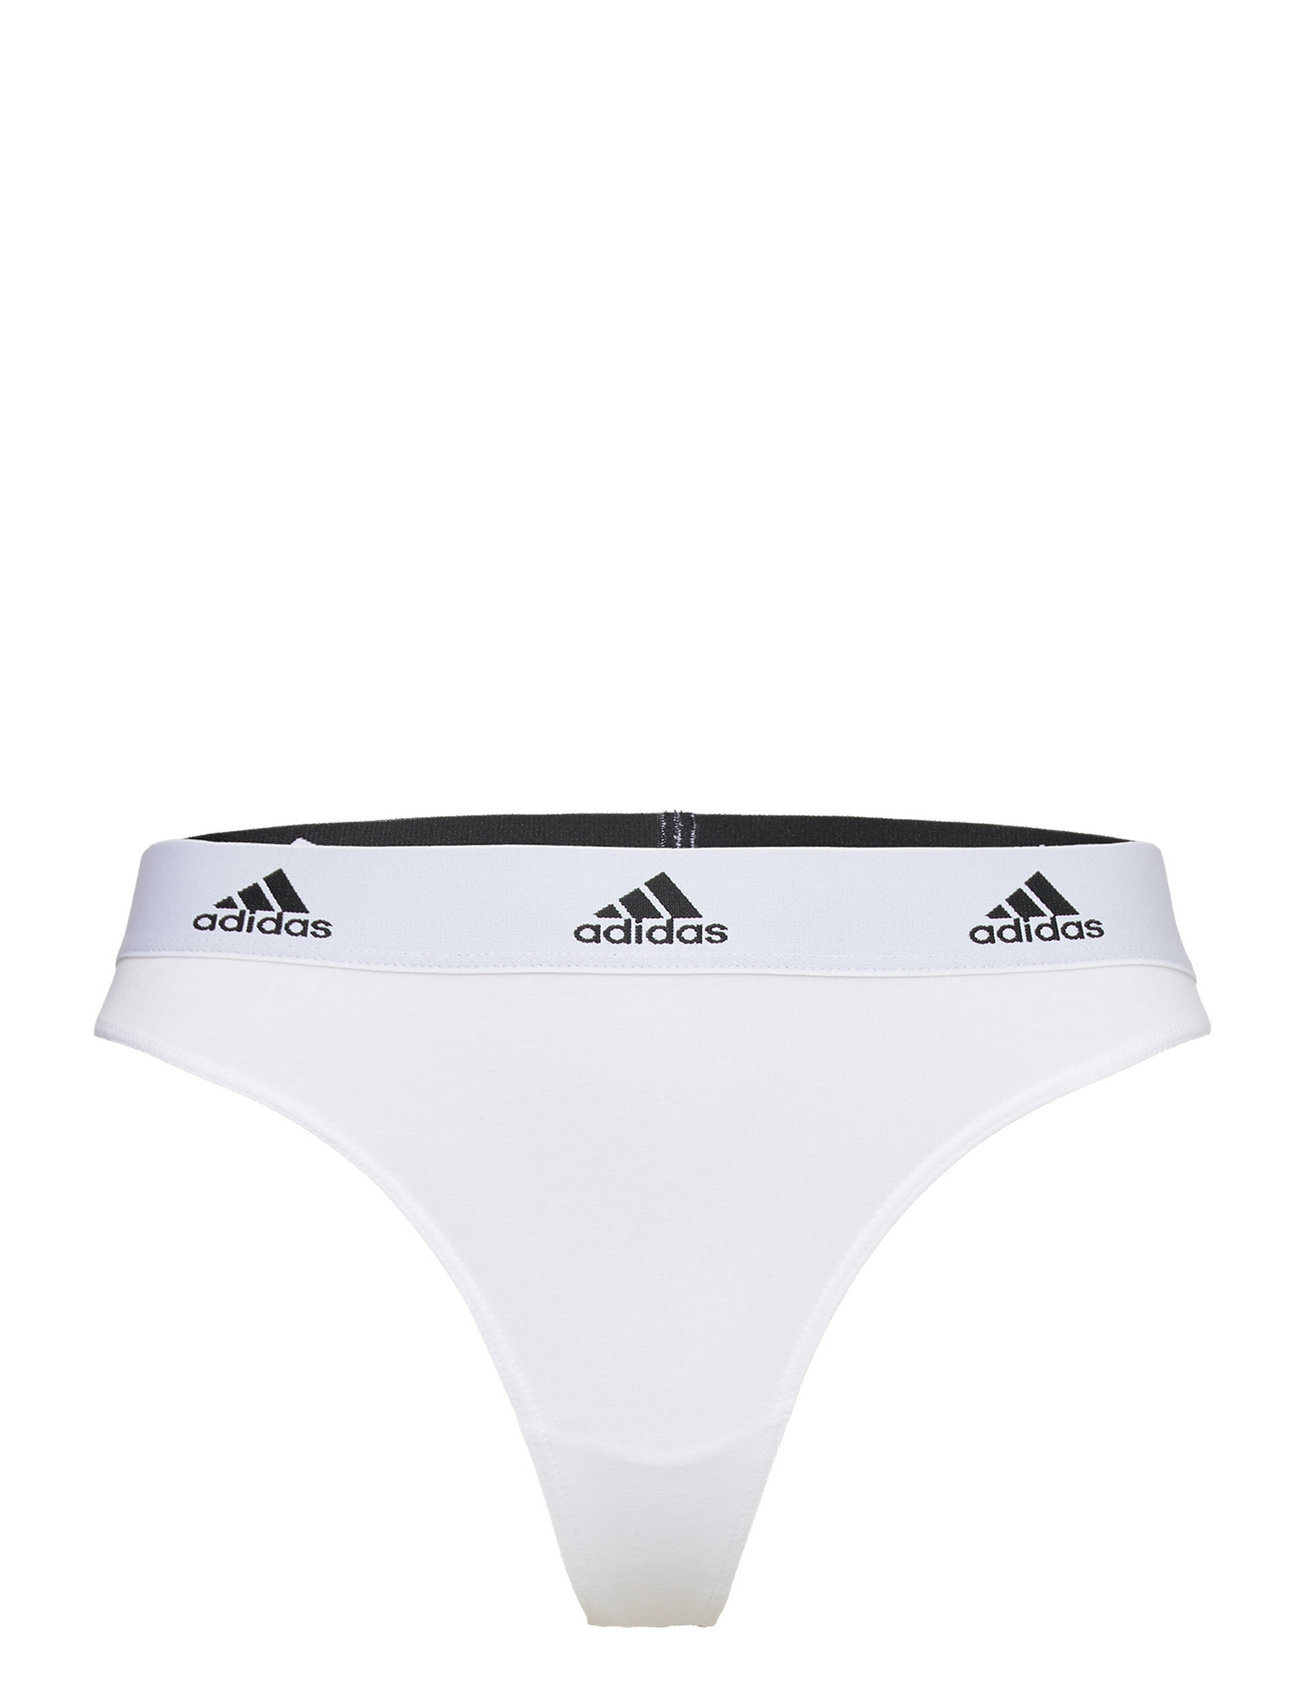 adidas Underwear Thong – panties – shop at Booztlet